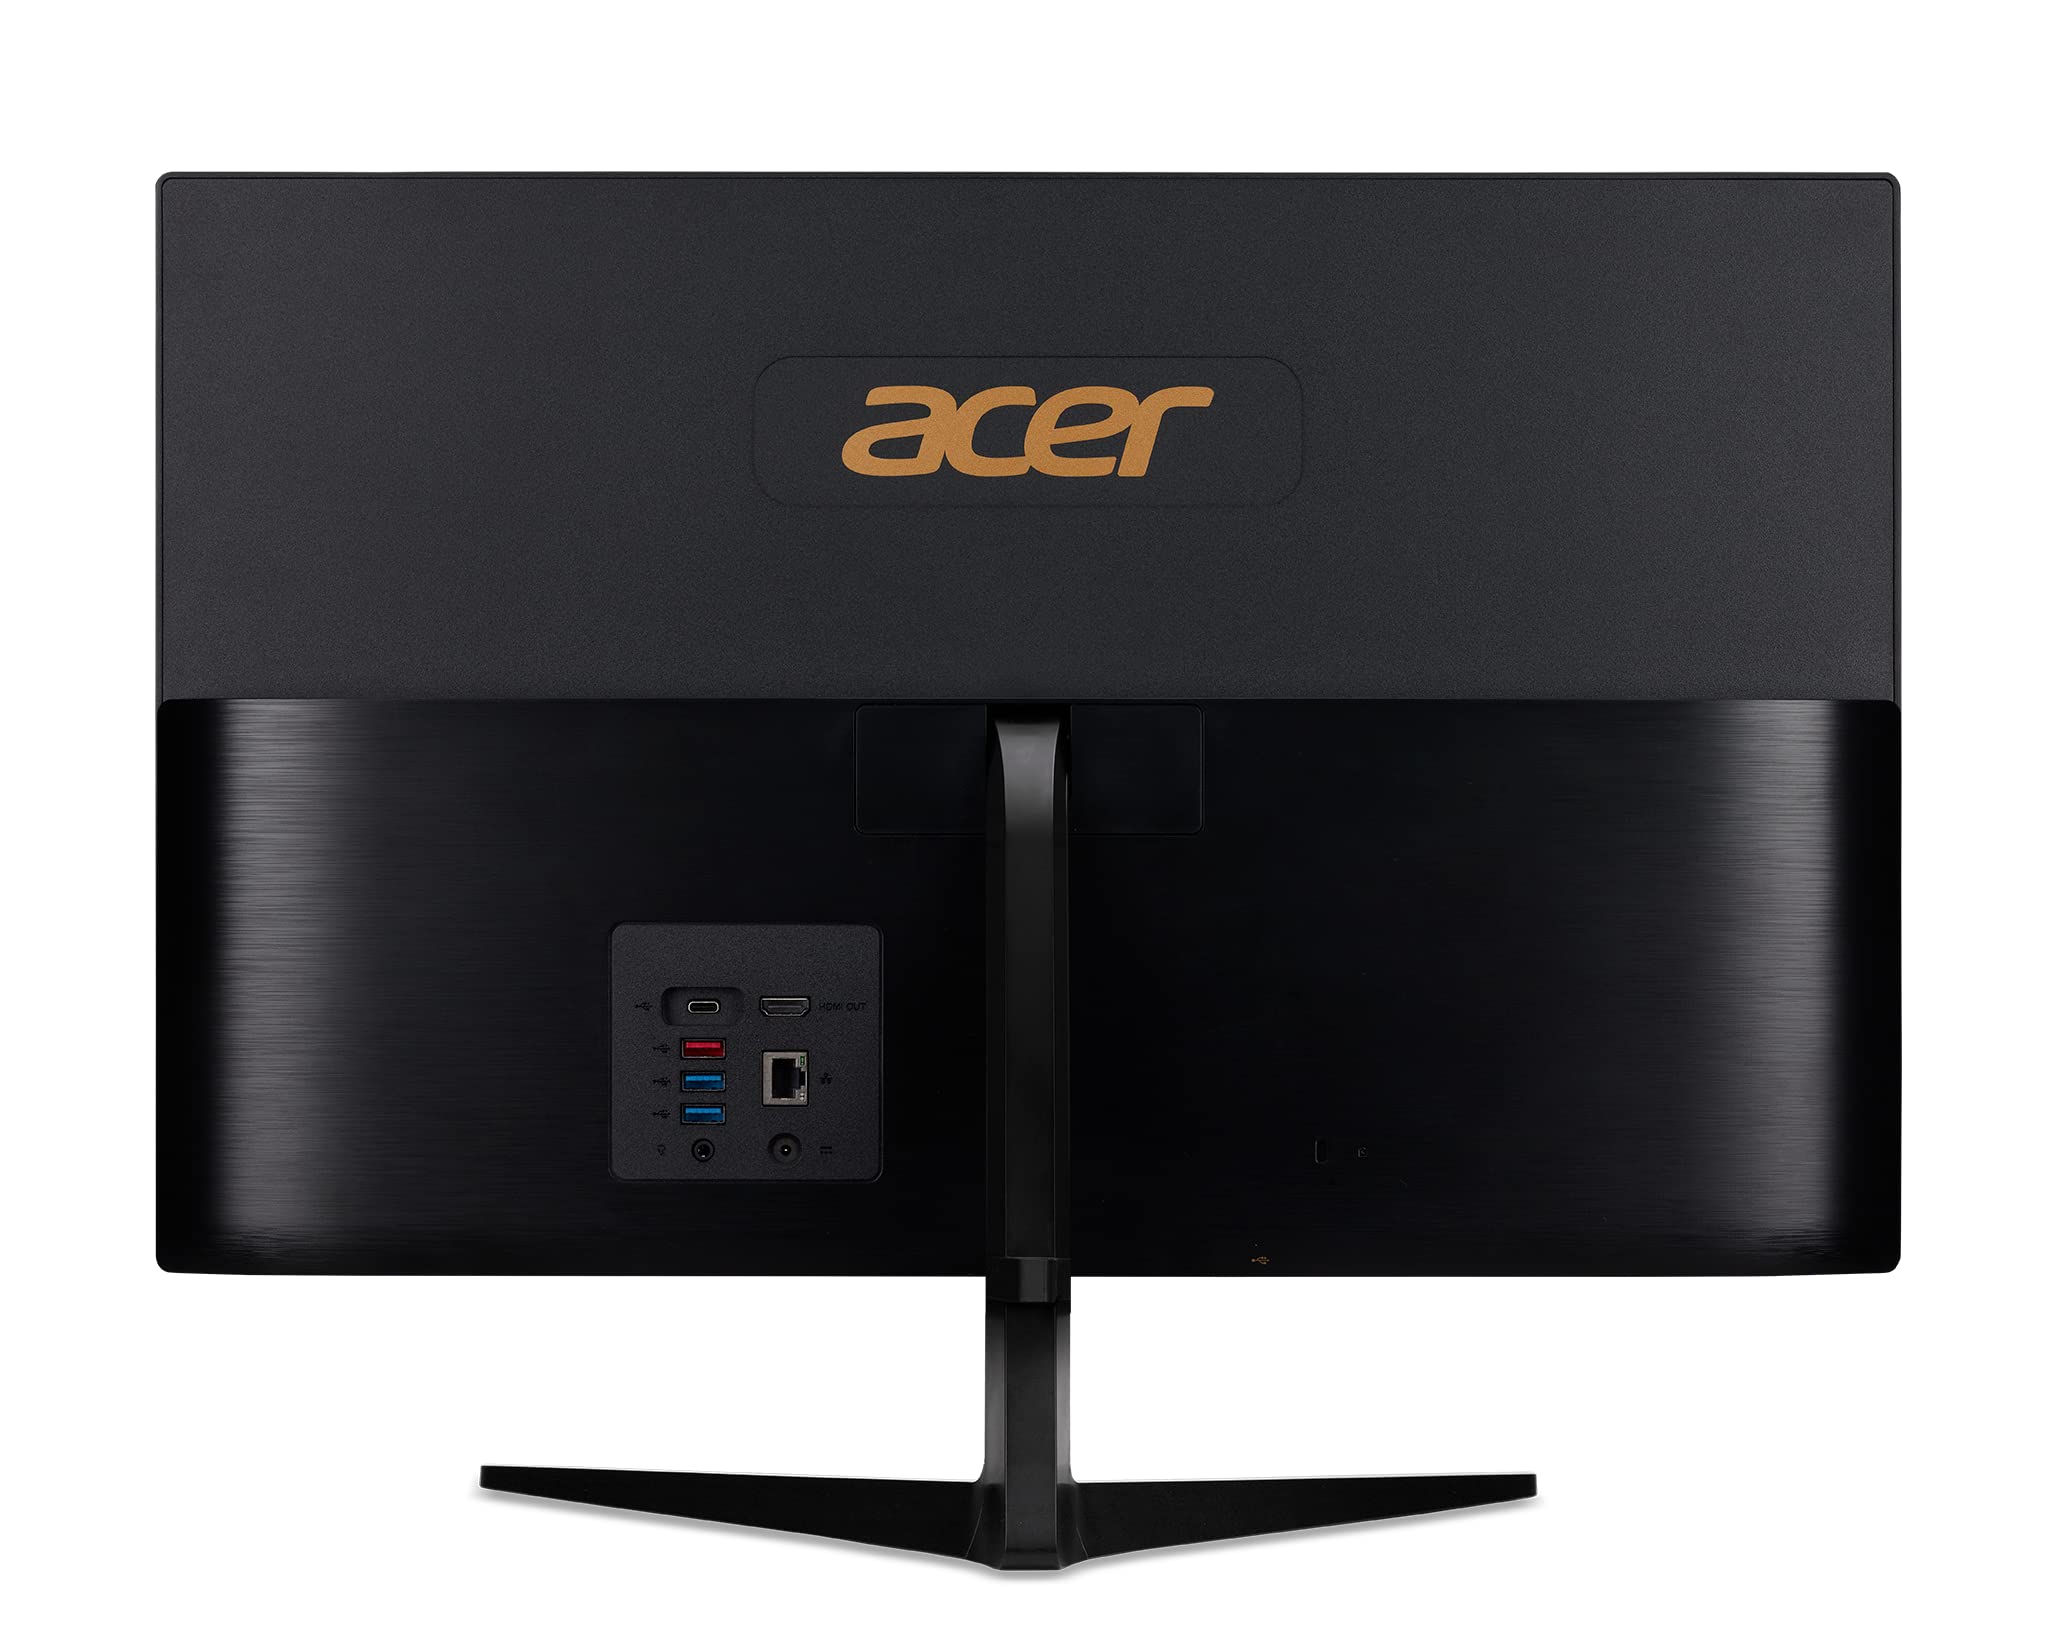 Acer Aspire C24-1700-UA91 AIO Desktop | 23.8